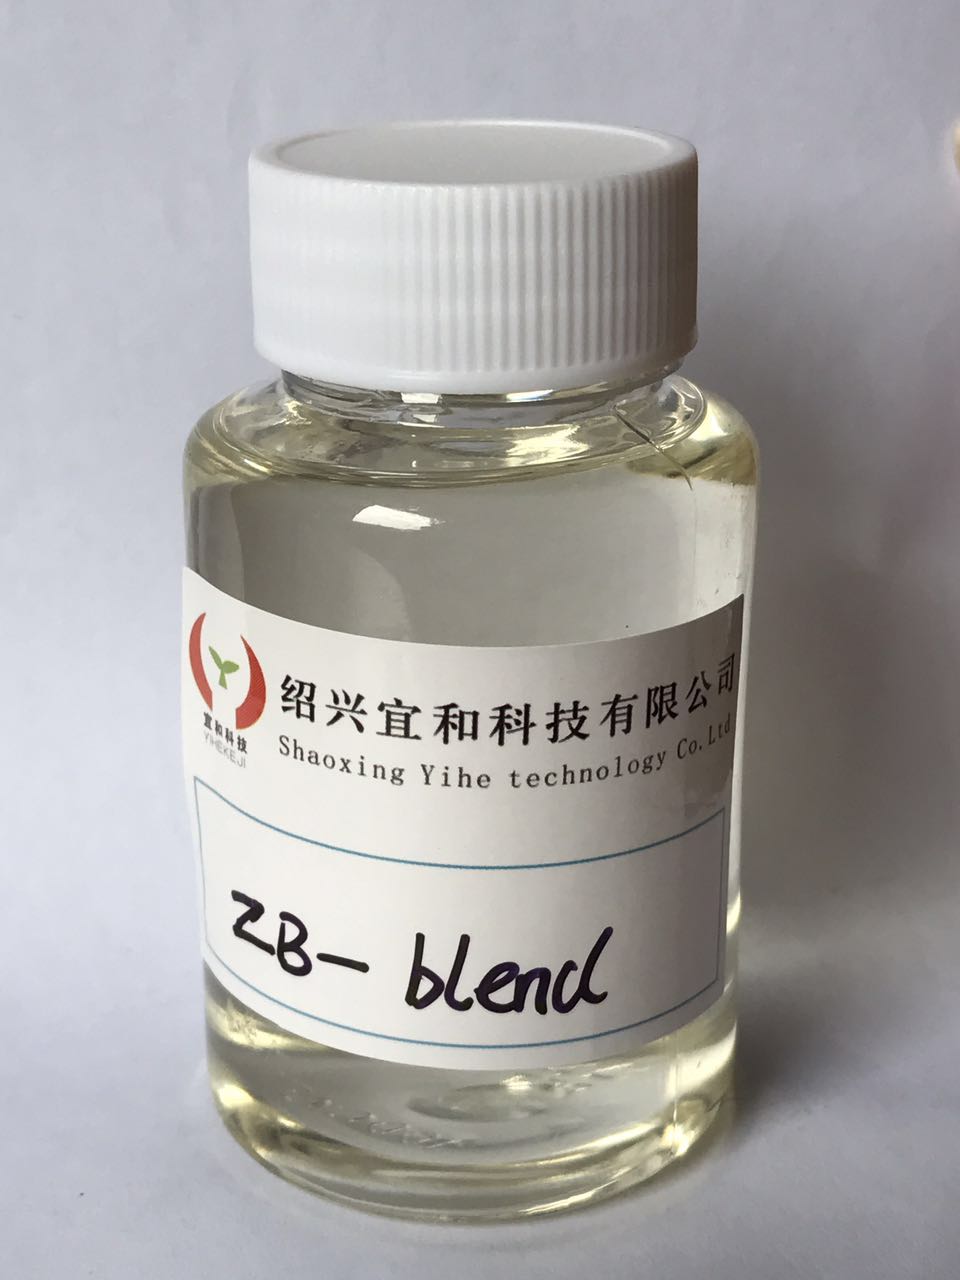 锌铋复合催化剂、聚氨酯环保催化剂批发